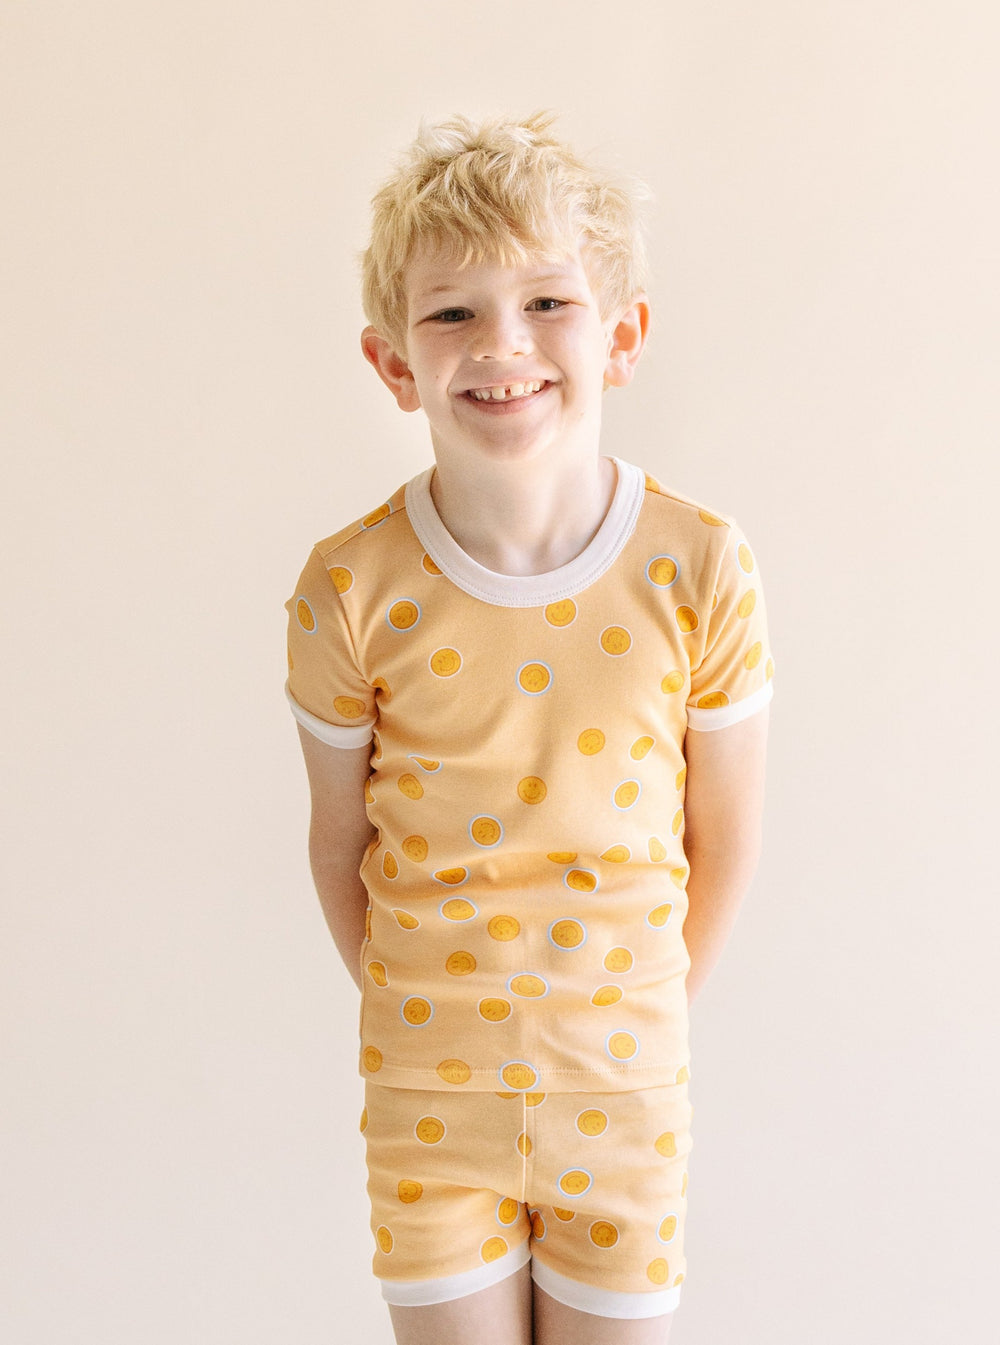 Kids Cotton Short Set Pajamas in Smiley